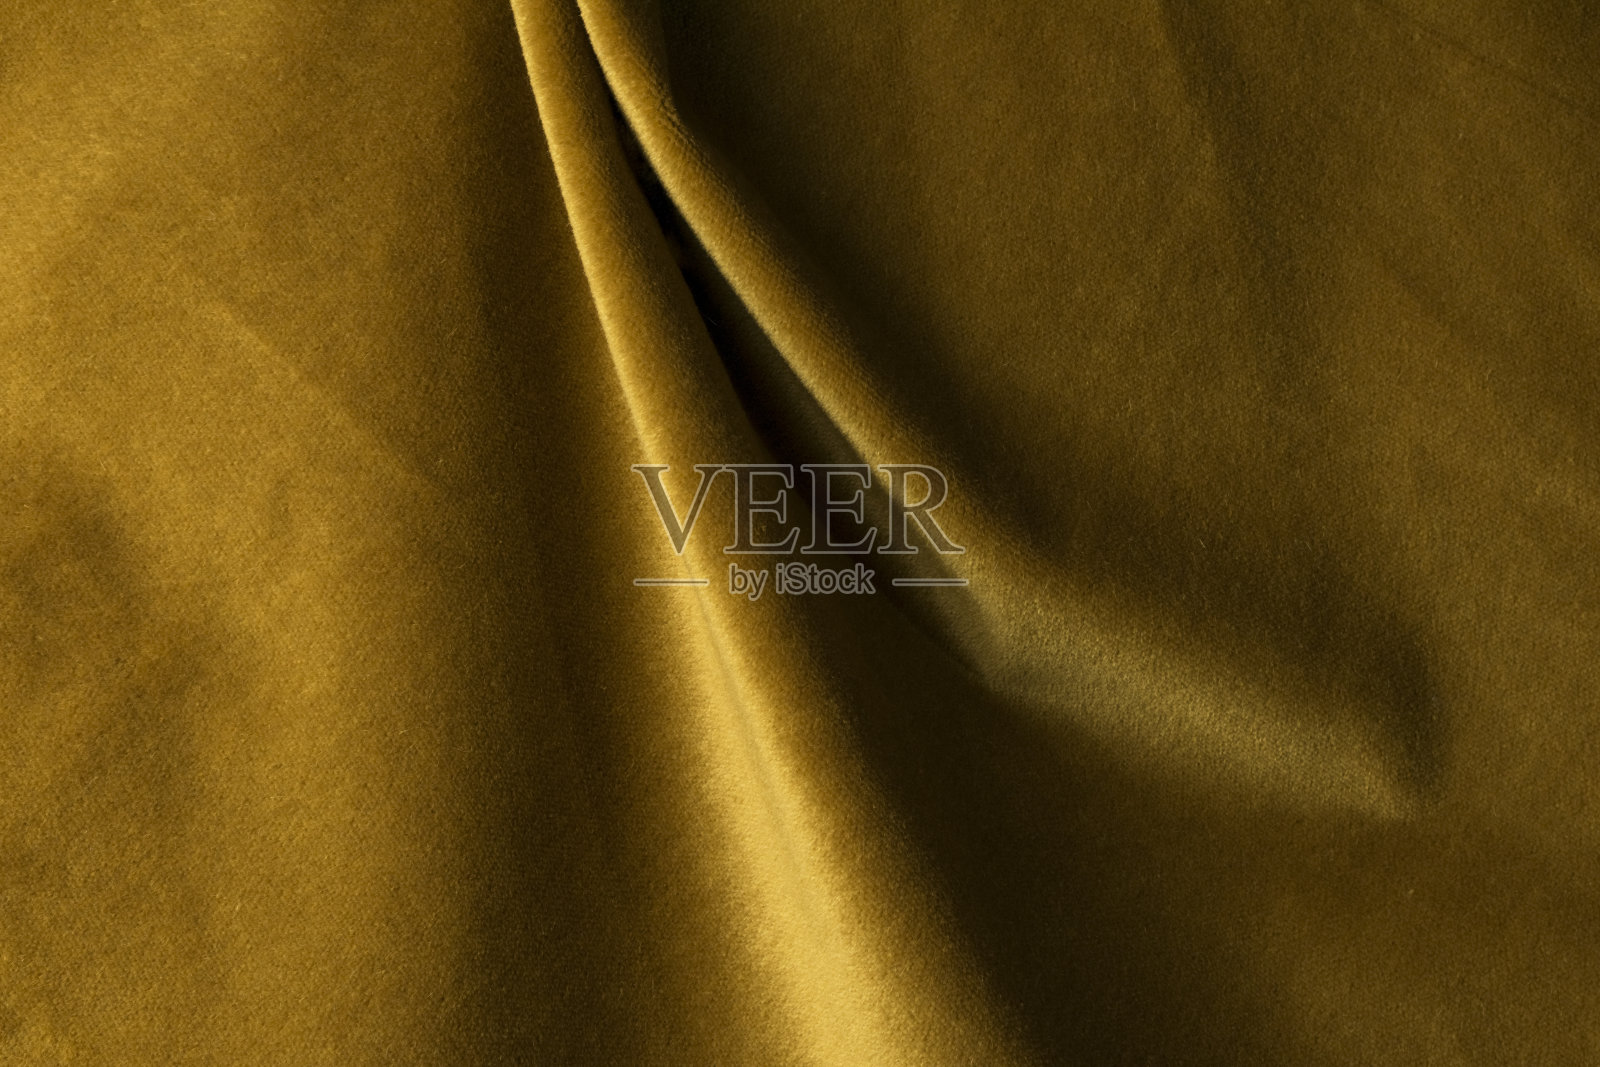 类似天鹅绒的金色安哥拉山羊丝绒织物，与天然丝线混纺。马海毛纺织。羊绒、天鹅绒、麂皮效果。为装饰照片摄影图片